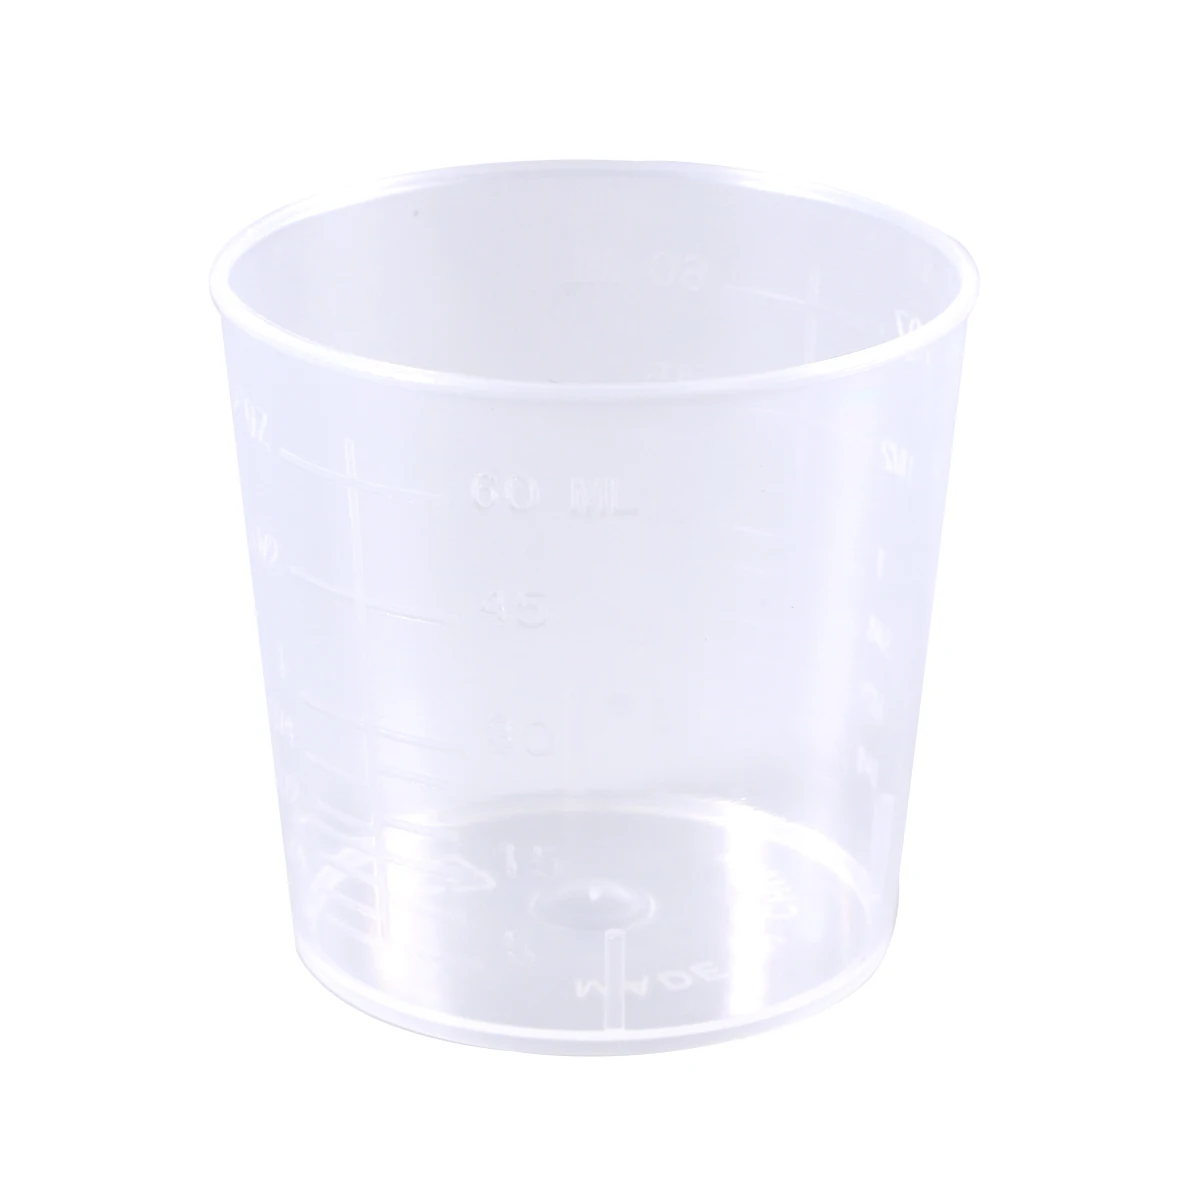 2 шт 60 мл Пластиковые Градуированные стаканы для измерения, измерительные стаканы, лабораторные и кулинарные жидкости, контейнер для Смешивания Краски